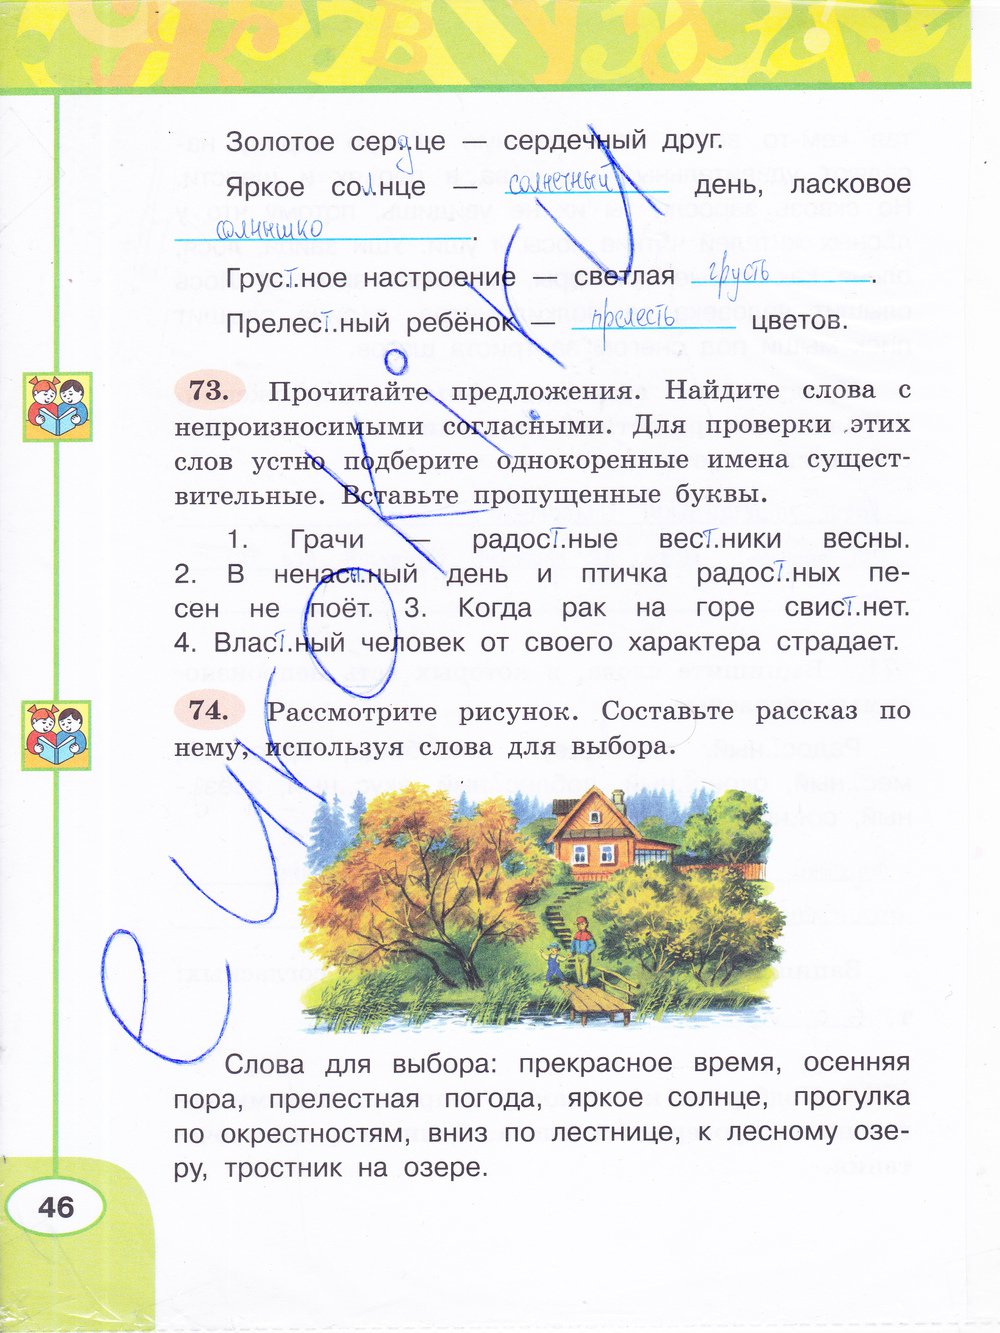 гдз 3 класс рабочая тетрадь часть 1 страница 46 русский язык Климанова, Бабушкина